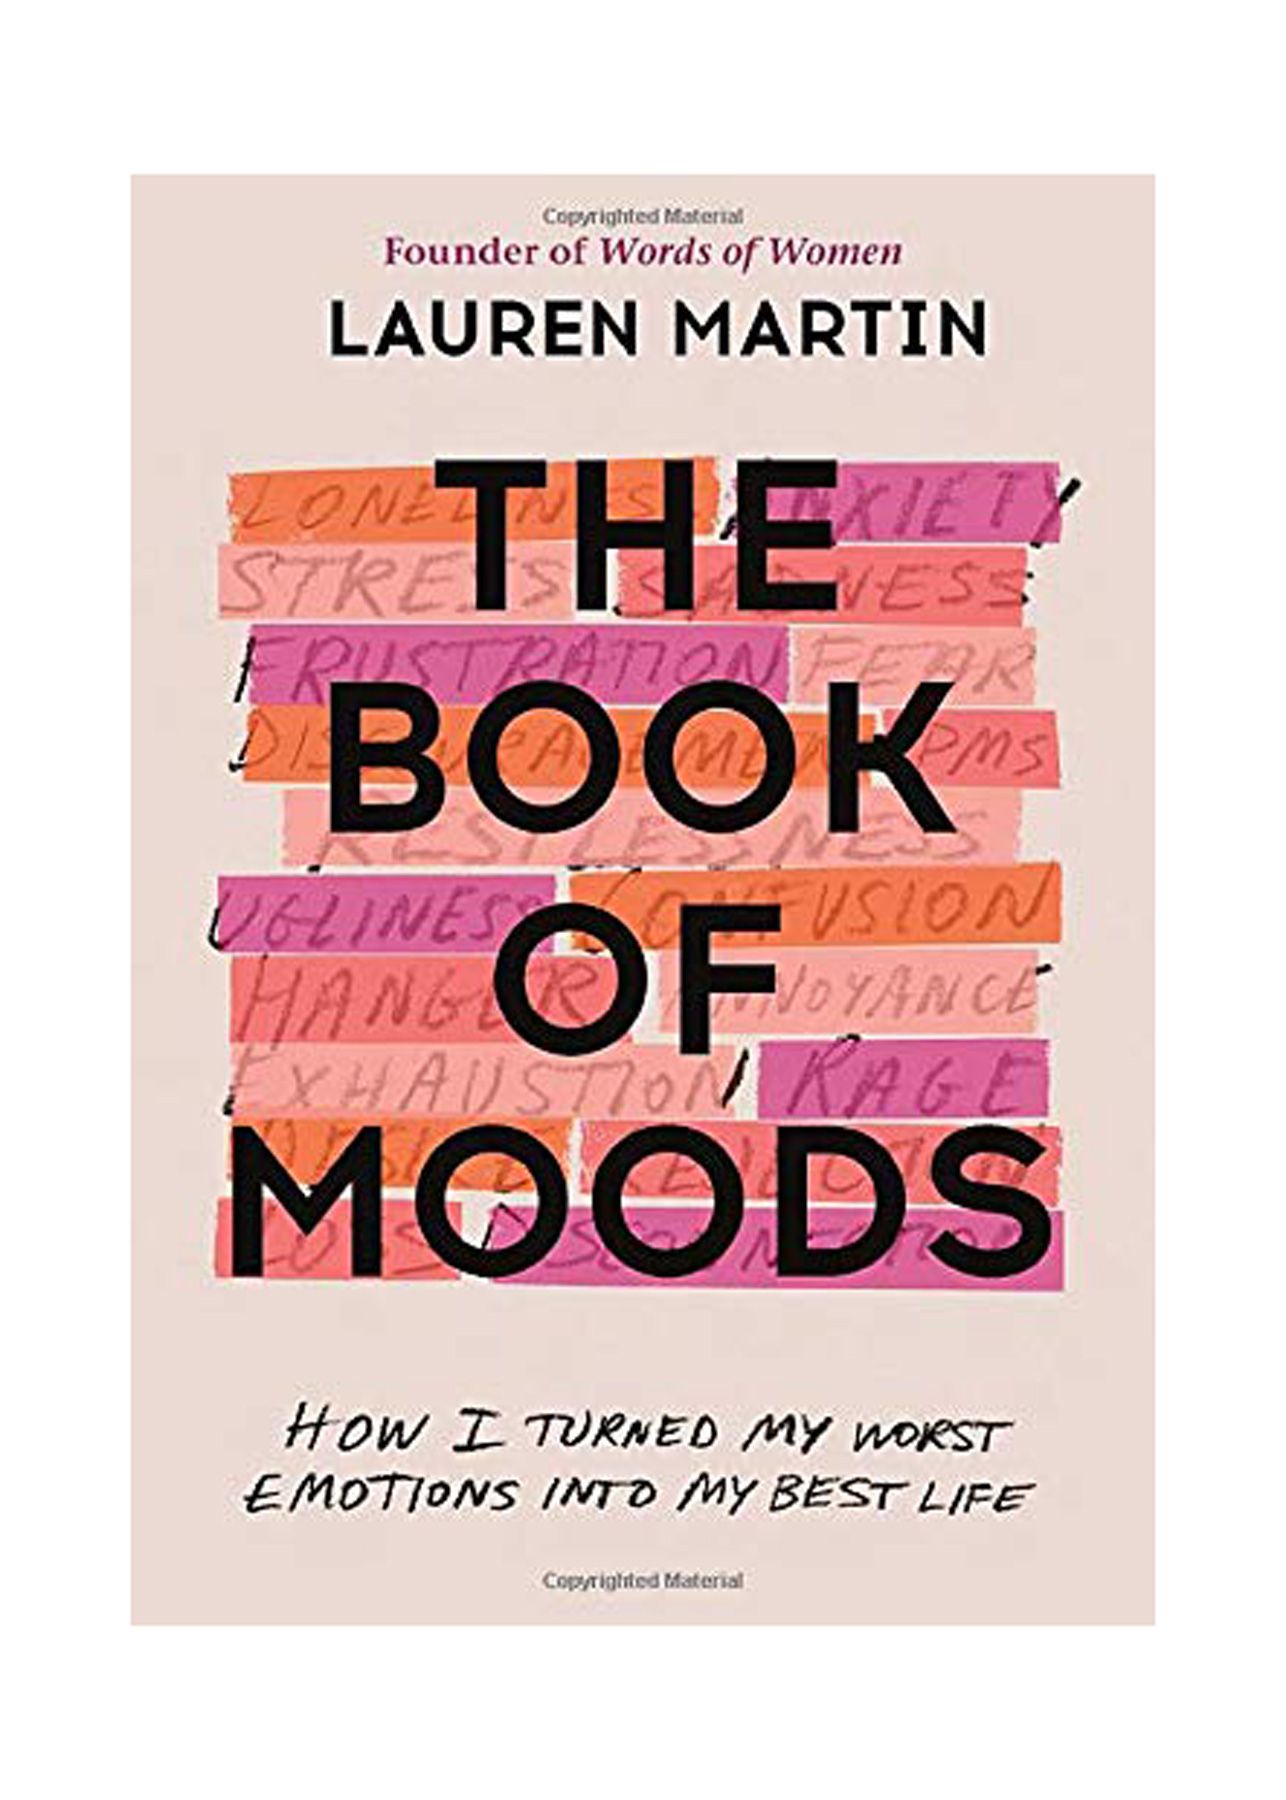 Geros knygos, kurias verta skaityti sulaukus 20 metų: Lauren Martin „Nuotaikų knyga: kaip blogiausias emocijas paverčiau geriausiu gyvenimu“